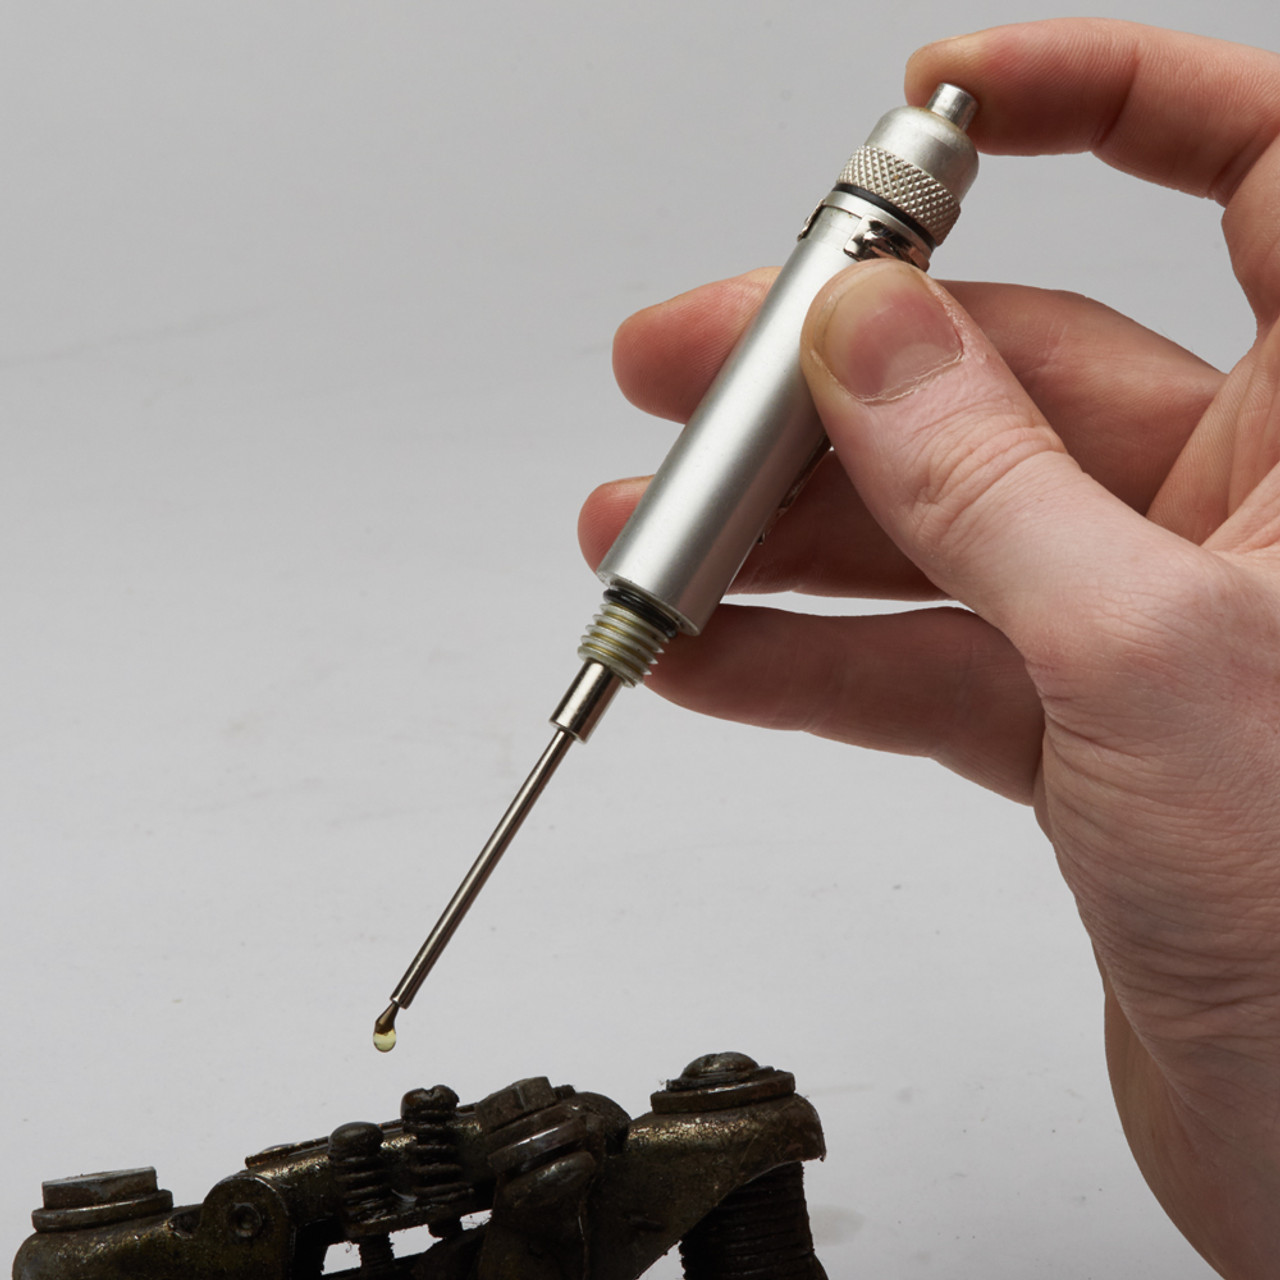 Precision Oiler Pen Precision Oil Applicator Gun - China Precision Oiler,  Precision Gun